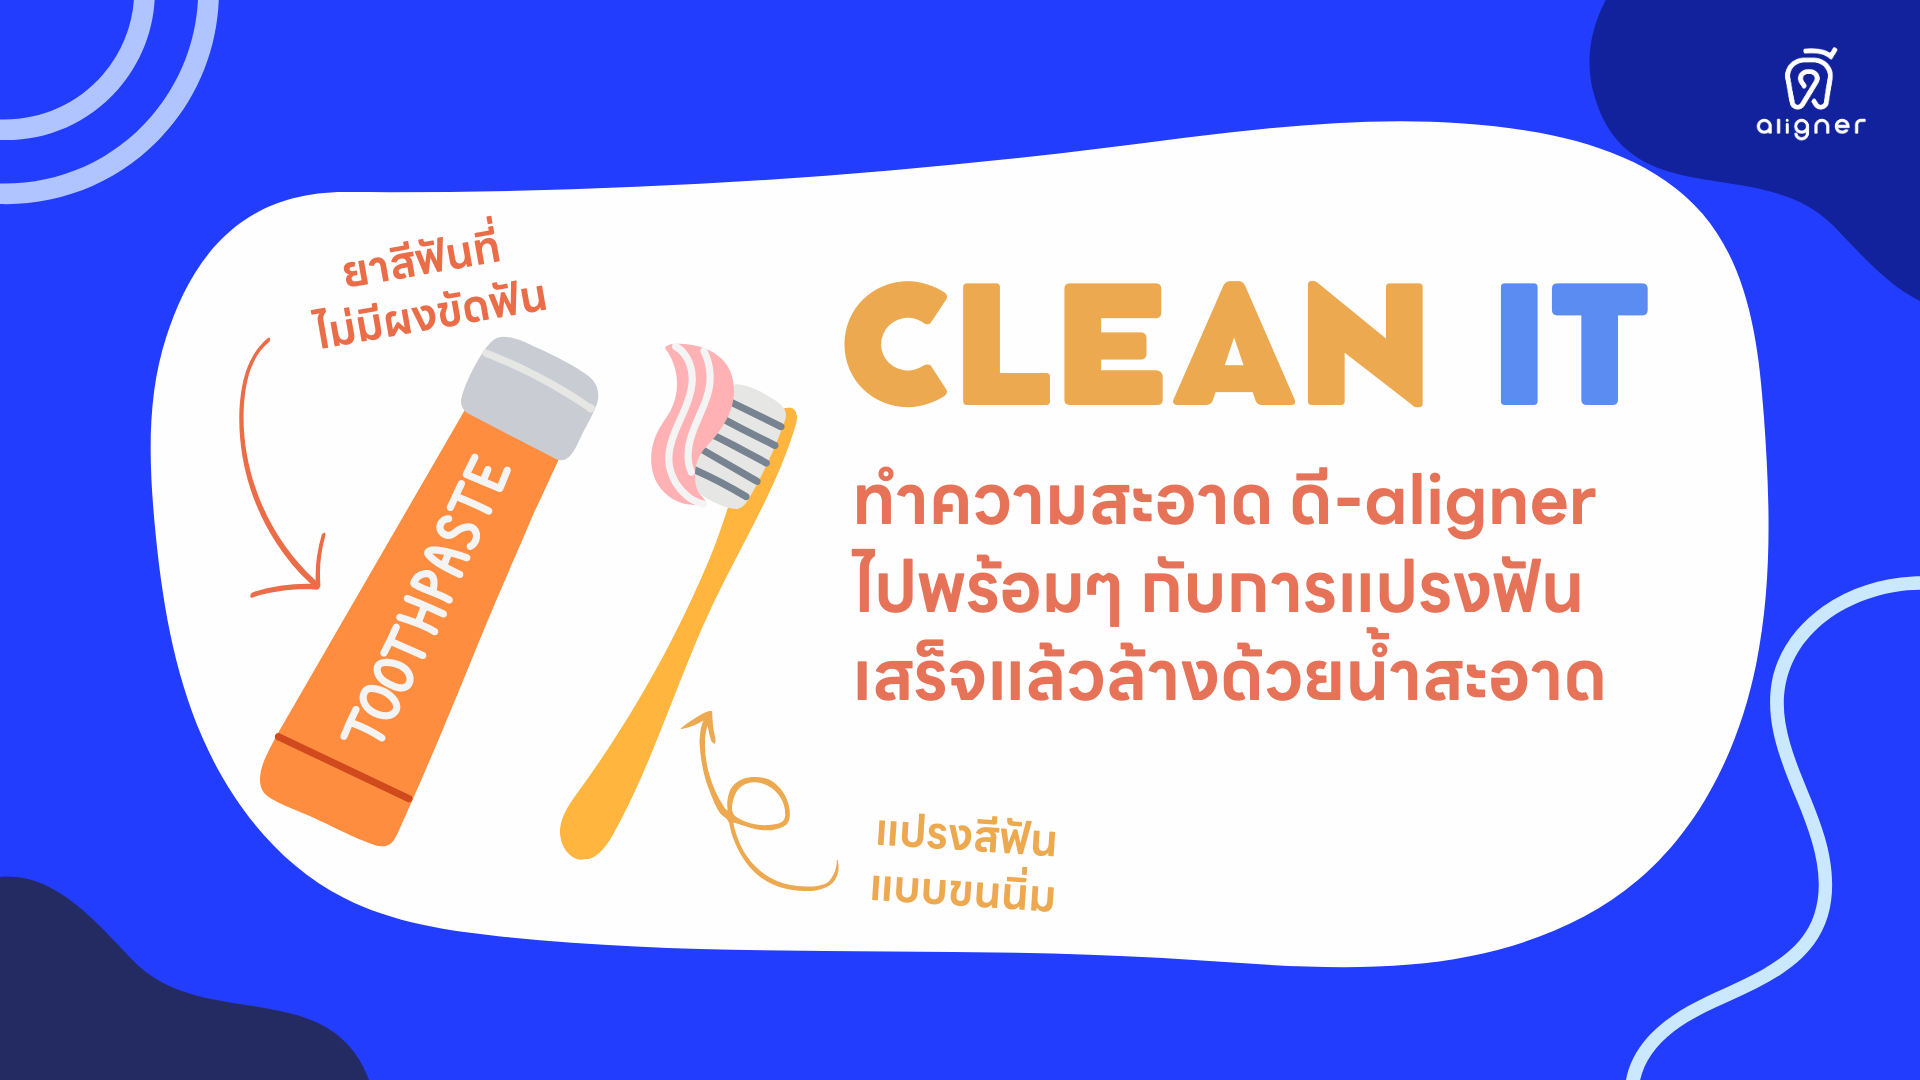 วิธีการปฎิบัติตัวหลังใส่ จัดฟันใส ดี-aligner - ทำความสะอาด